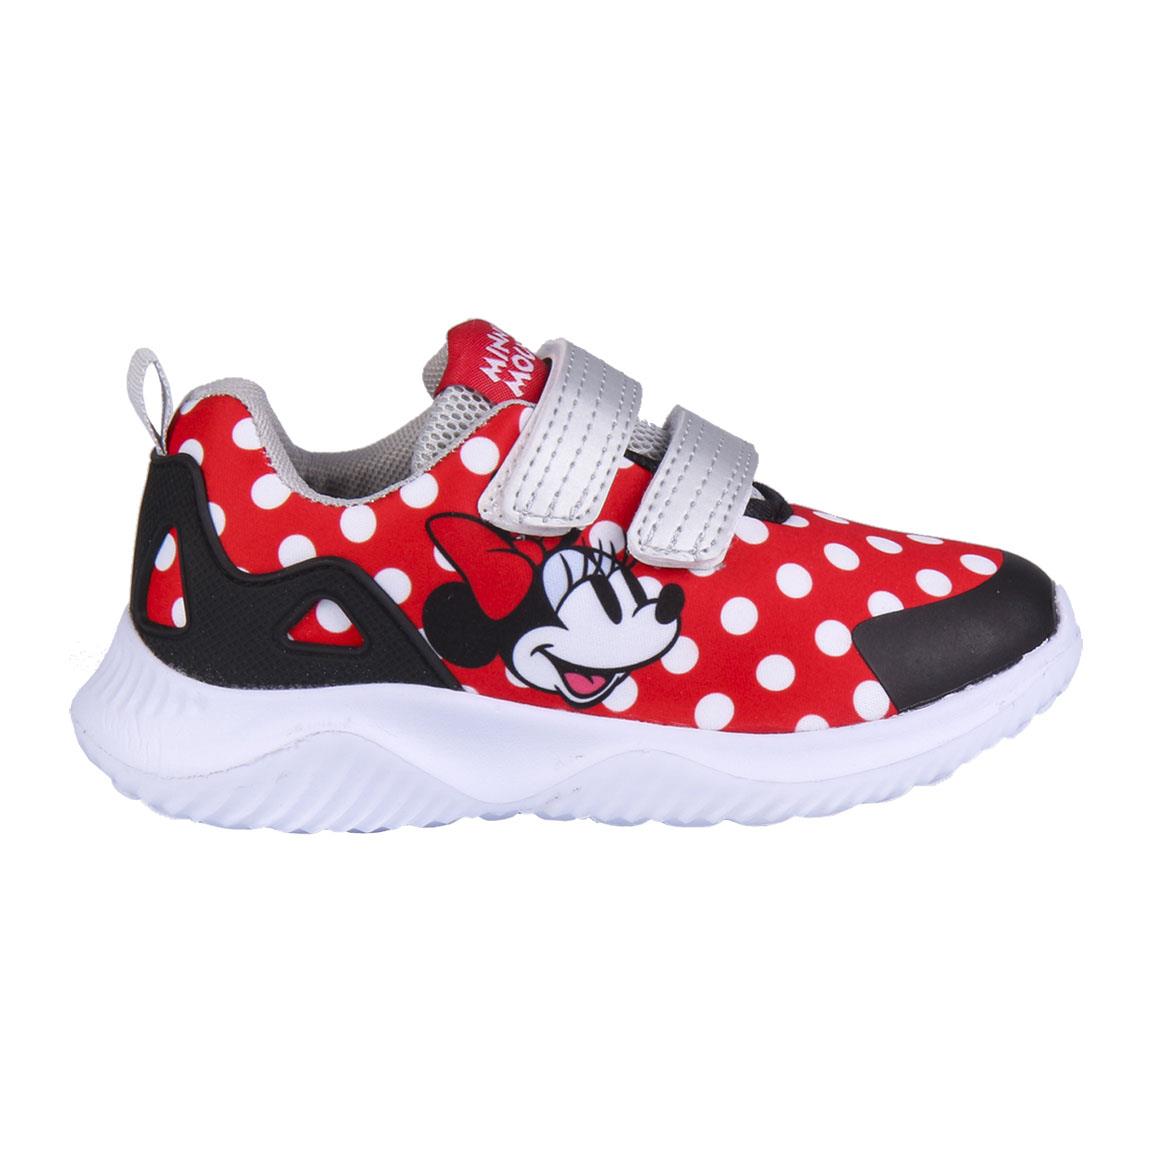 Chaussures de Sport pour Enfants Minnie Mouse Rouge